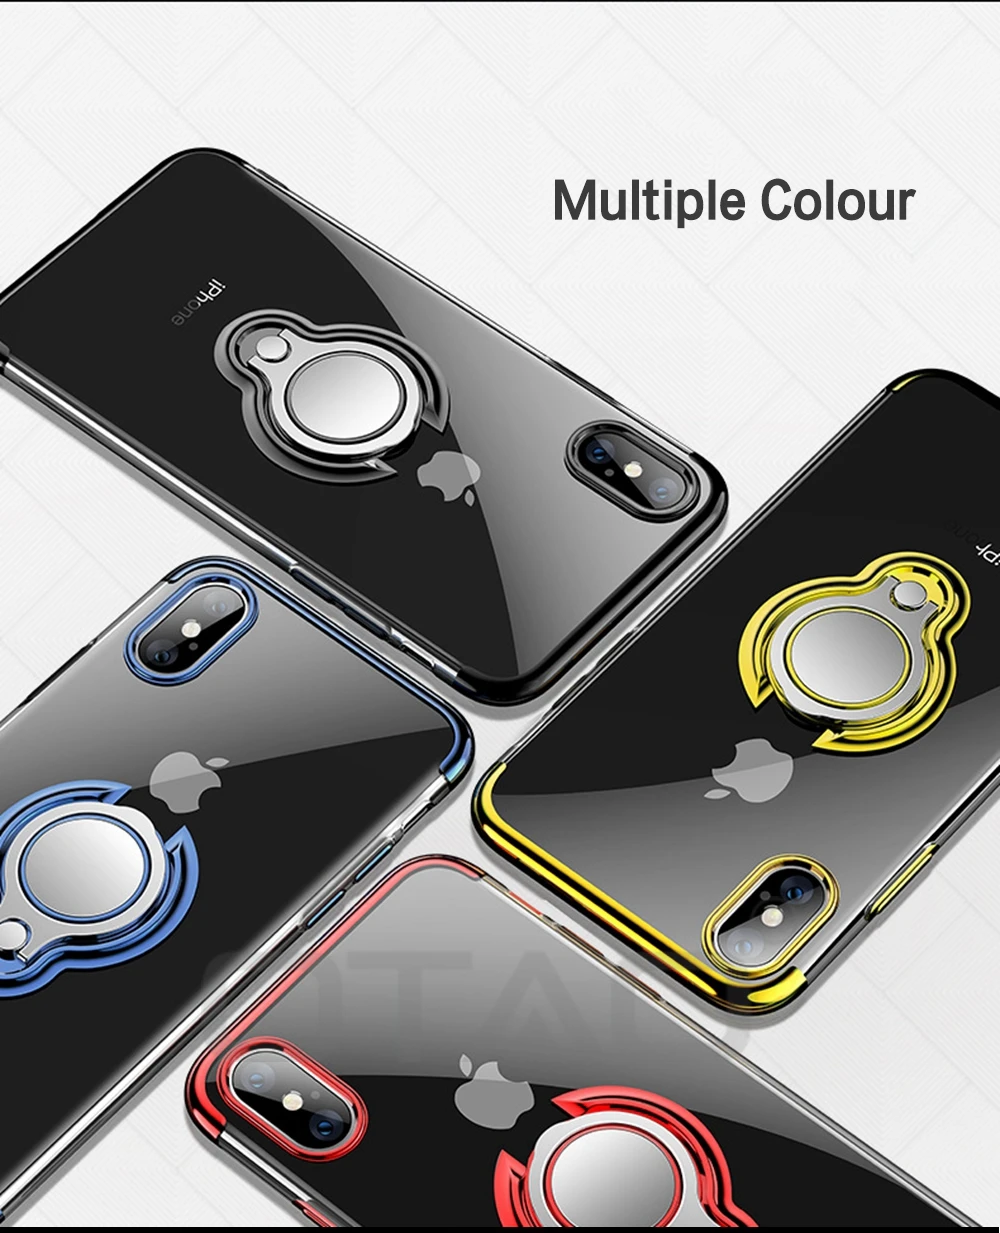 OTAO ультра тонкий прозрачный чехол для телефона для iPhone XS MAX XR X 8 7 6 6S Plus автомобильный Магнитный чехол s чехол с держателем-кольцом для пальца Coque